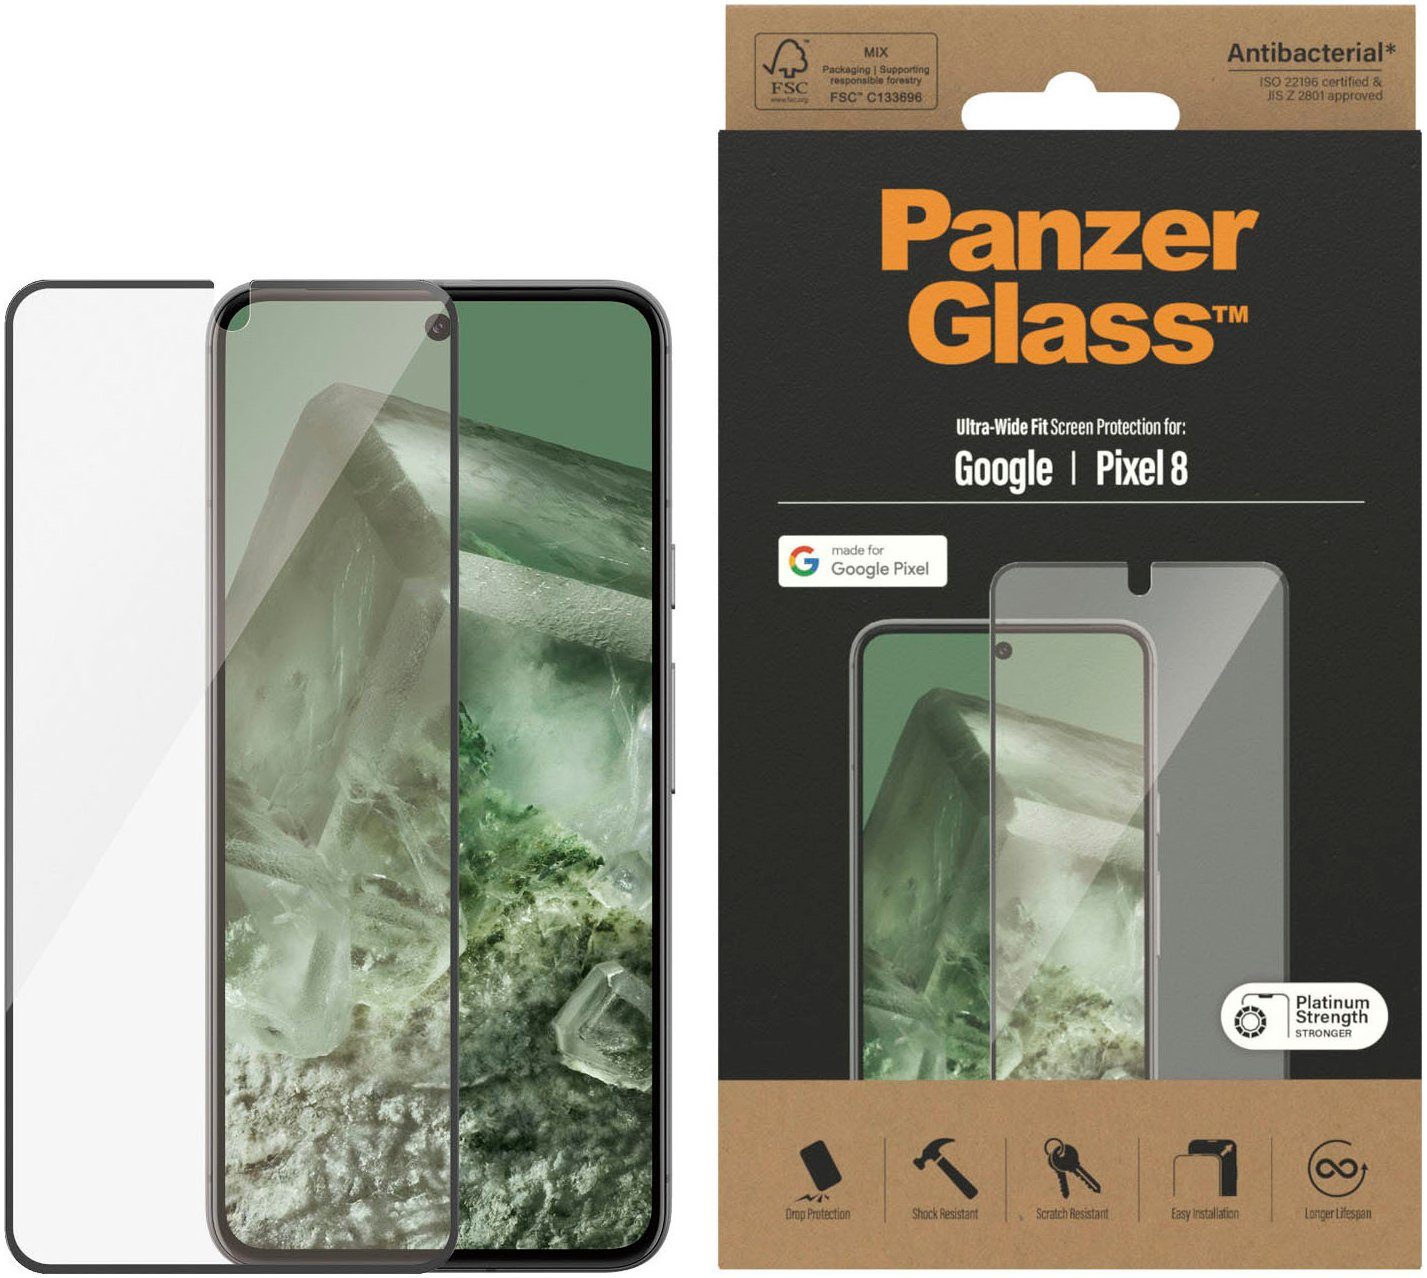 PanzerGlass Displayschutz Google Pixel 8 - Ultra-Wide Fit für Google Pixel 8, Displayschutzfolie, 1 Stück, Kratz-& Stoßfest,Antibakteriell,Berührungsempfindlich,Simpel Anbringen